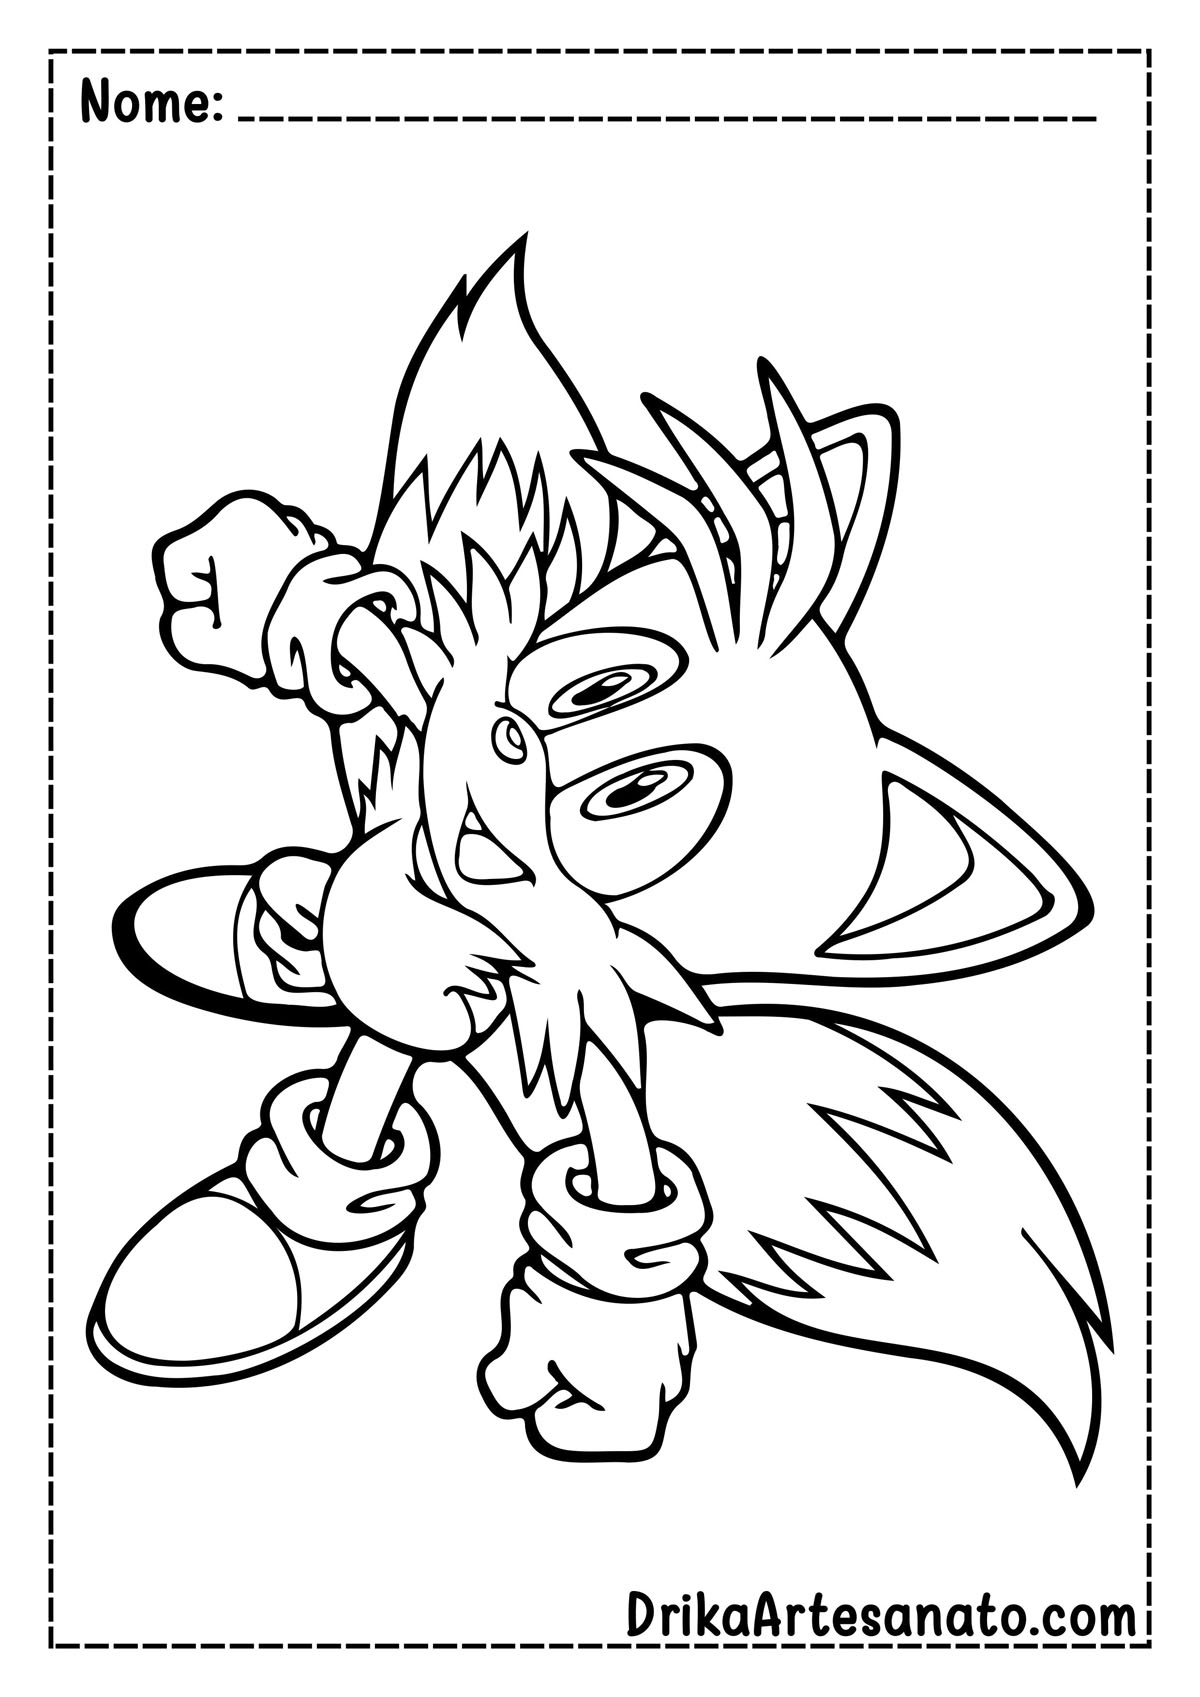 Desenho do Tails do Sonic para Colorir e Imprimir